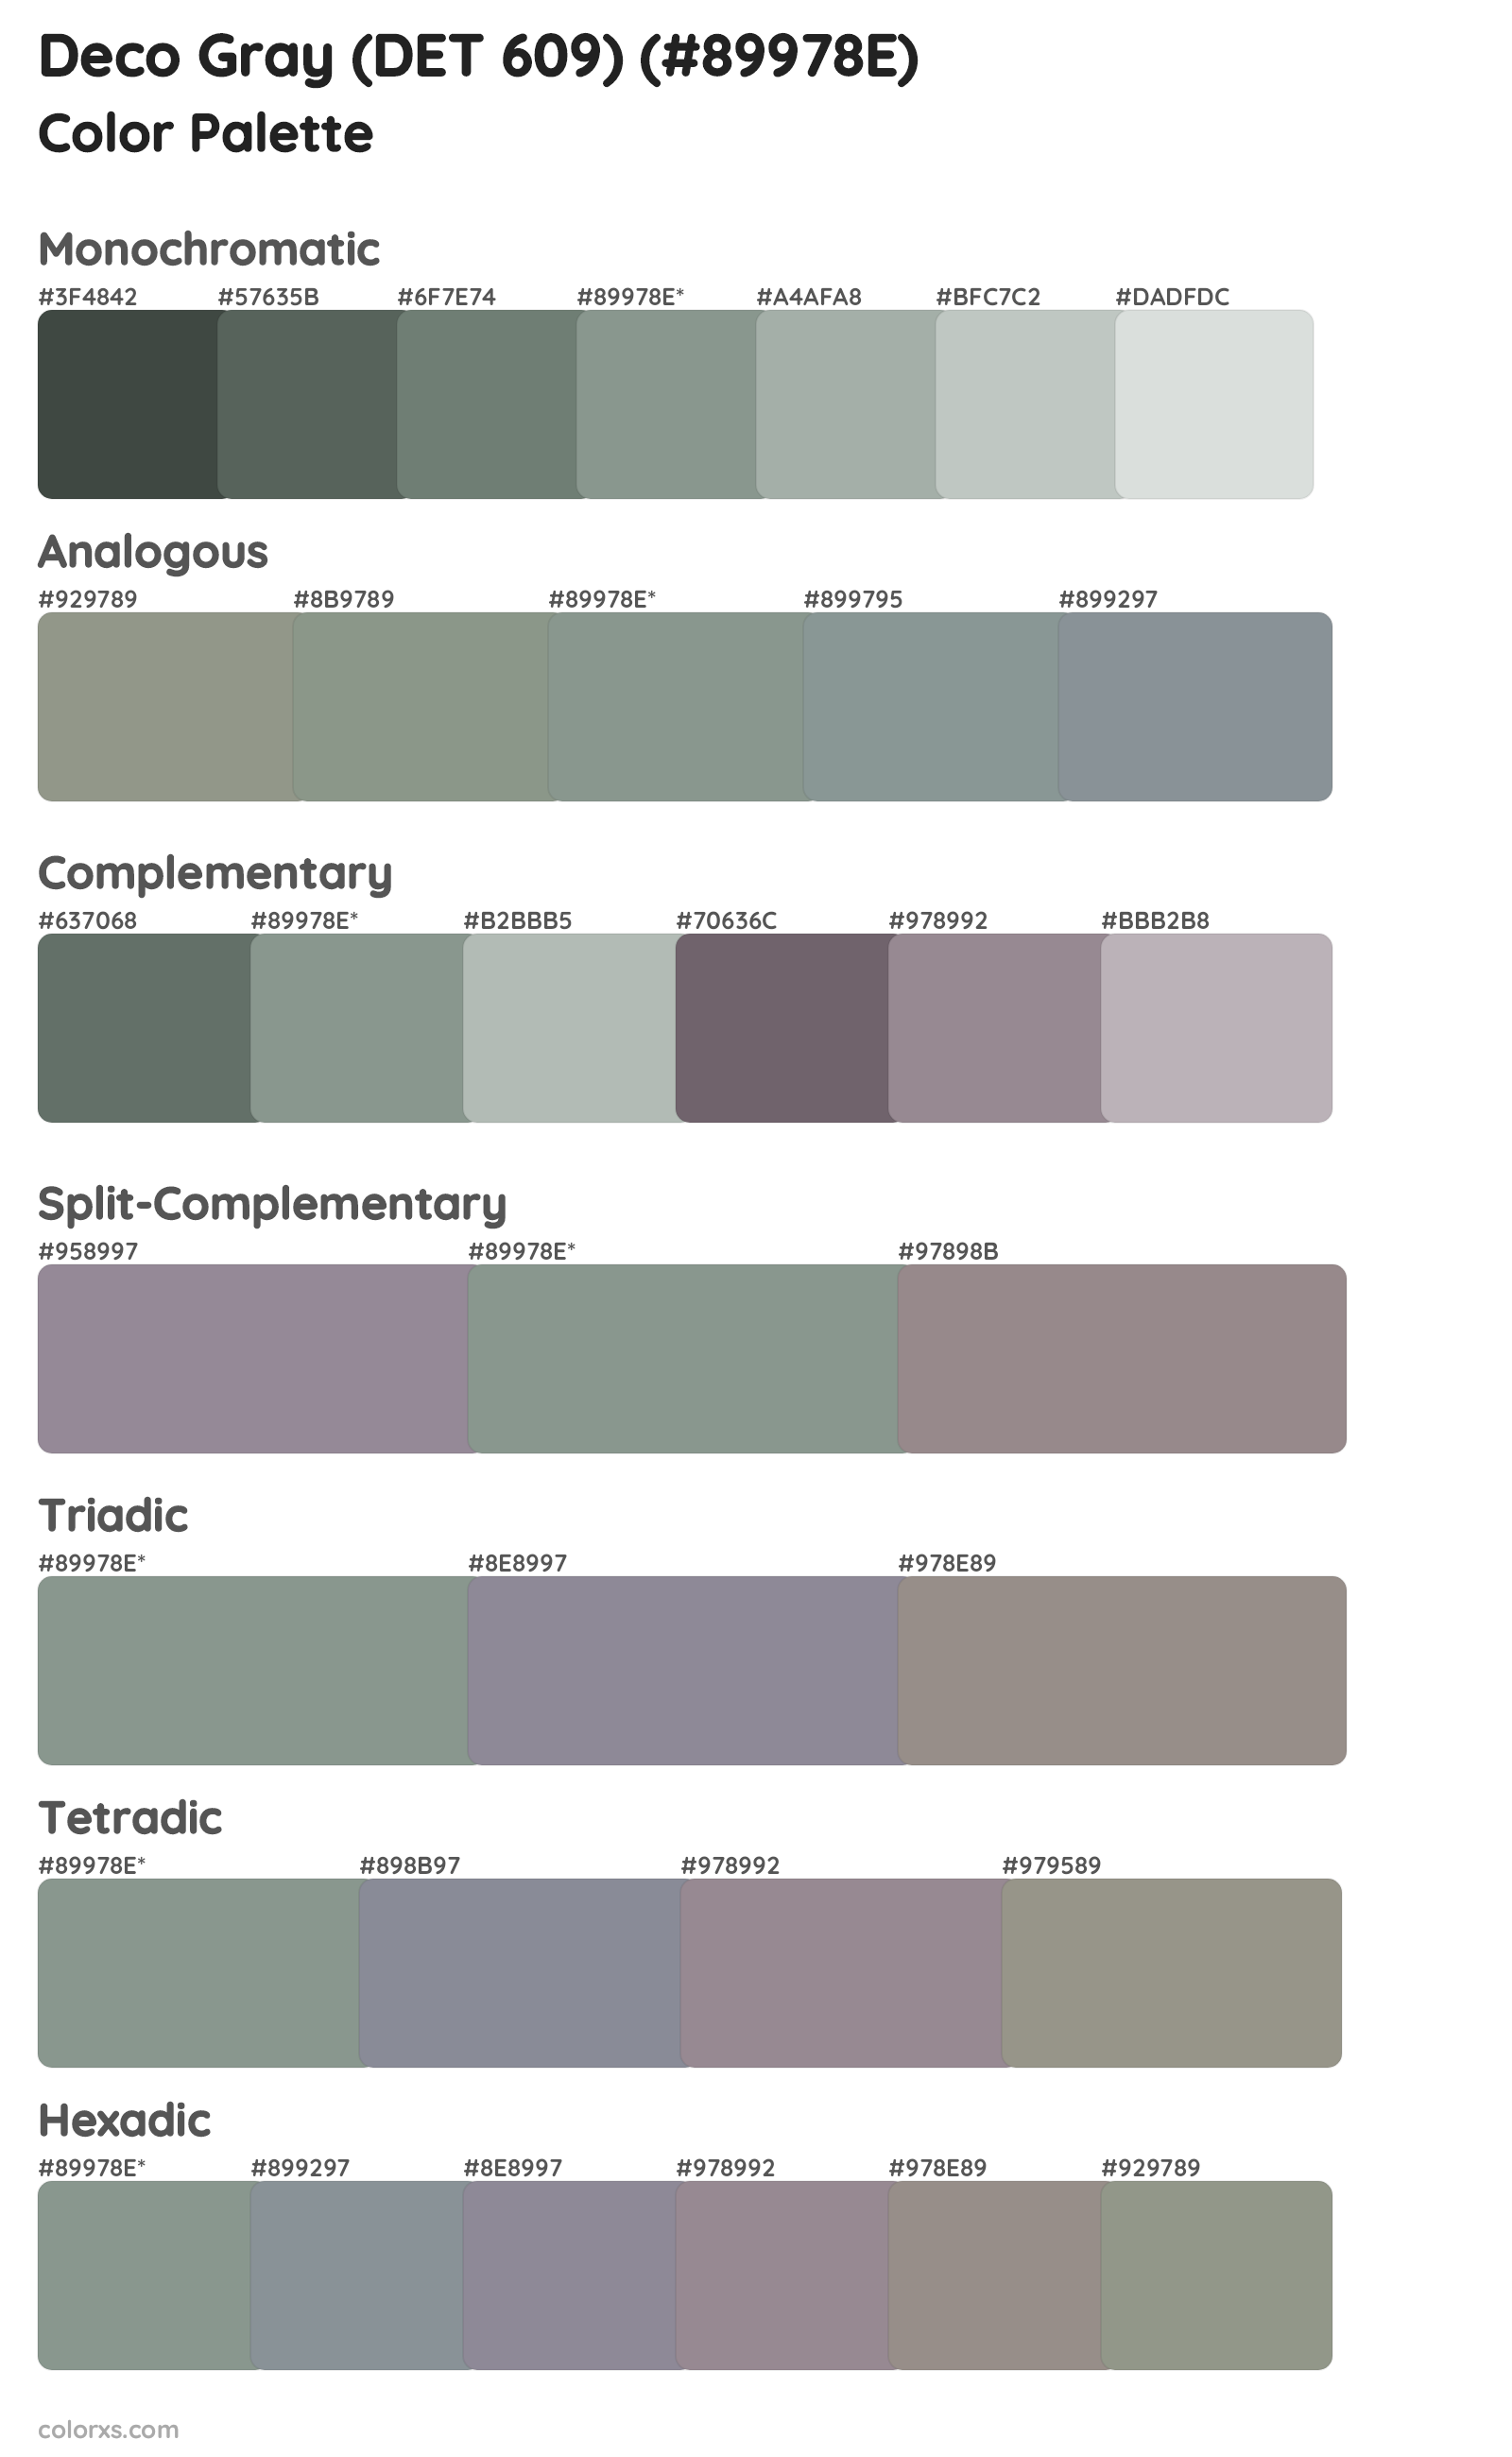 Deco Gray (DET 609) Color Scheme Palettes